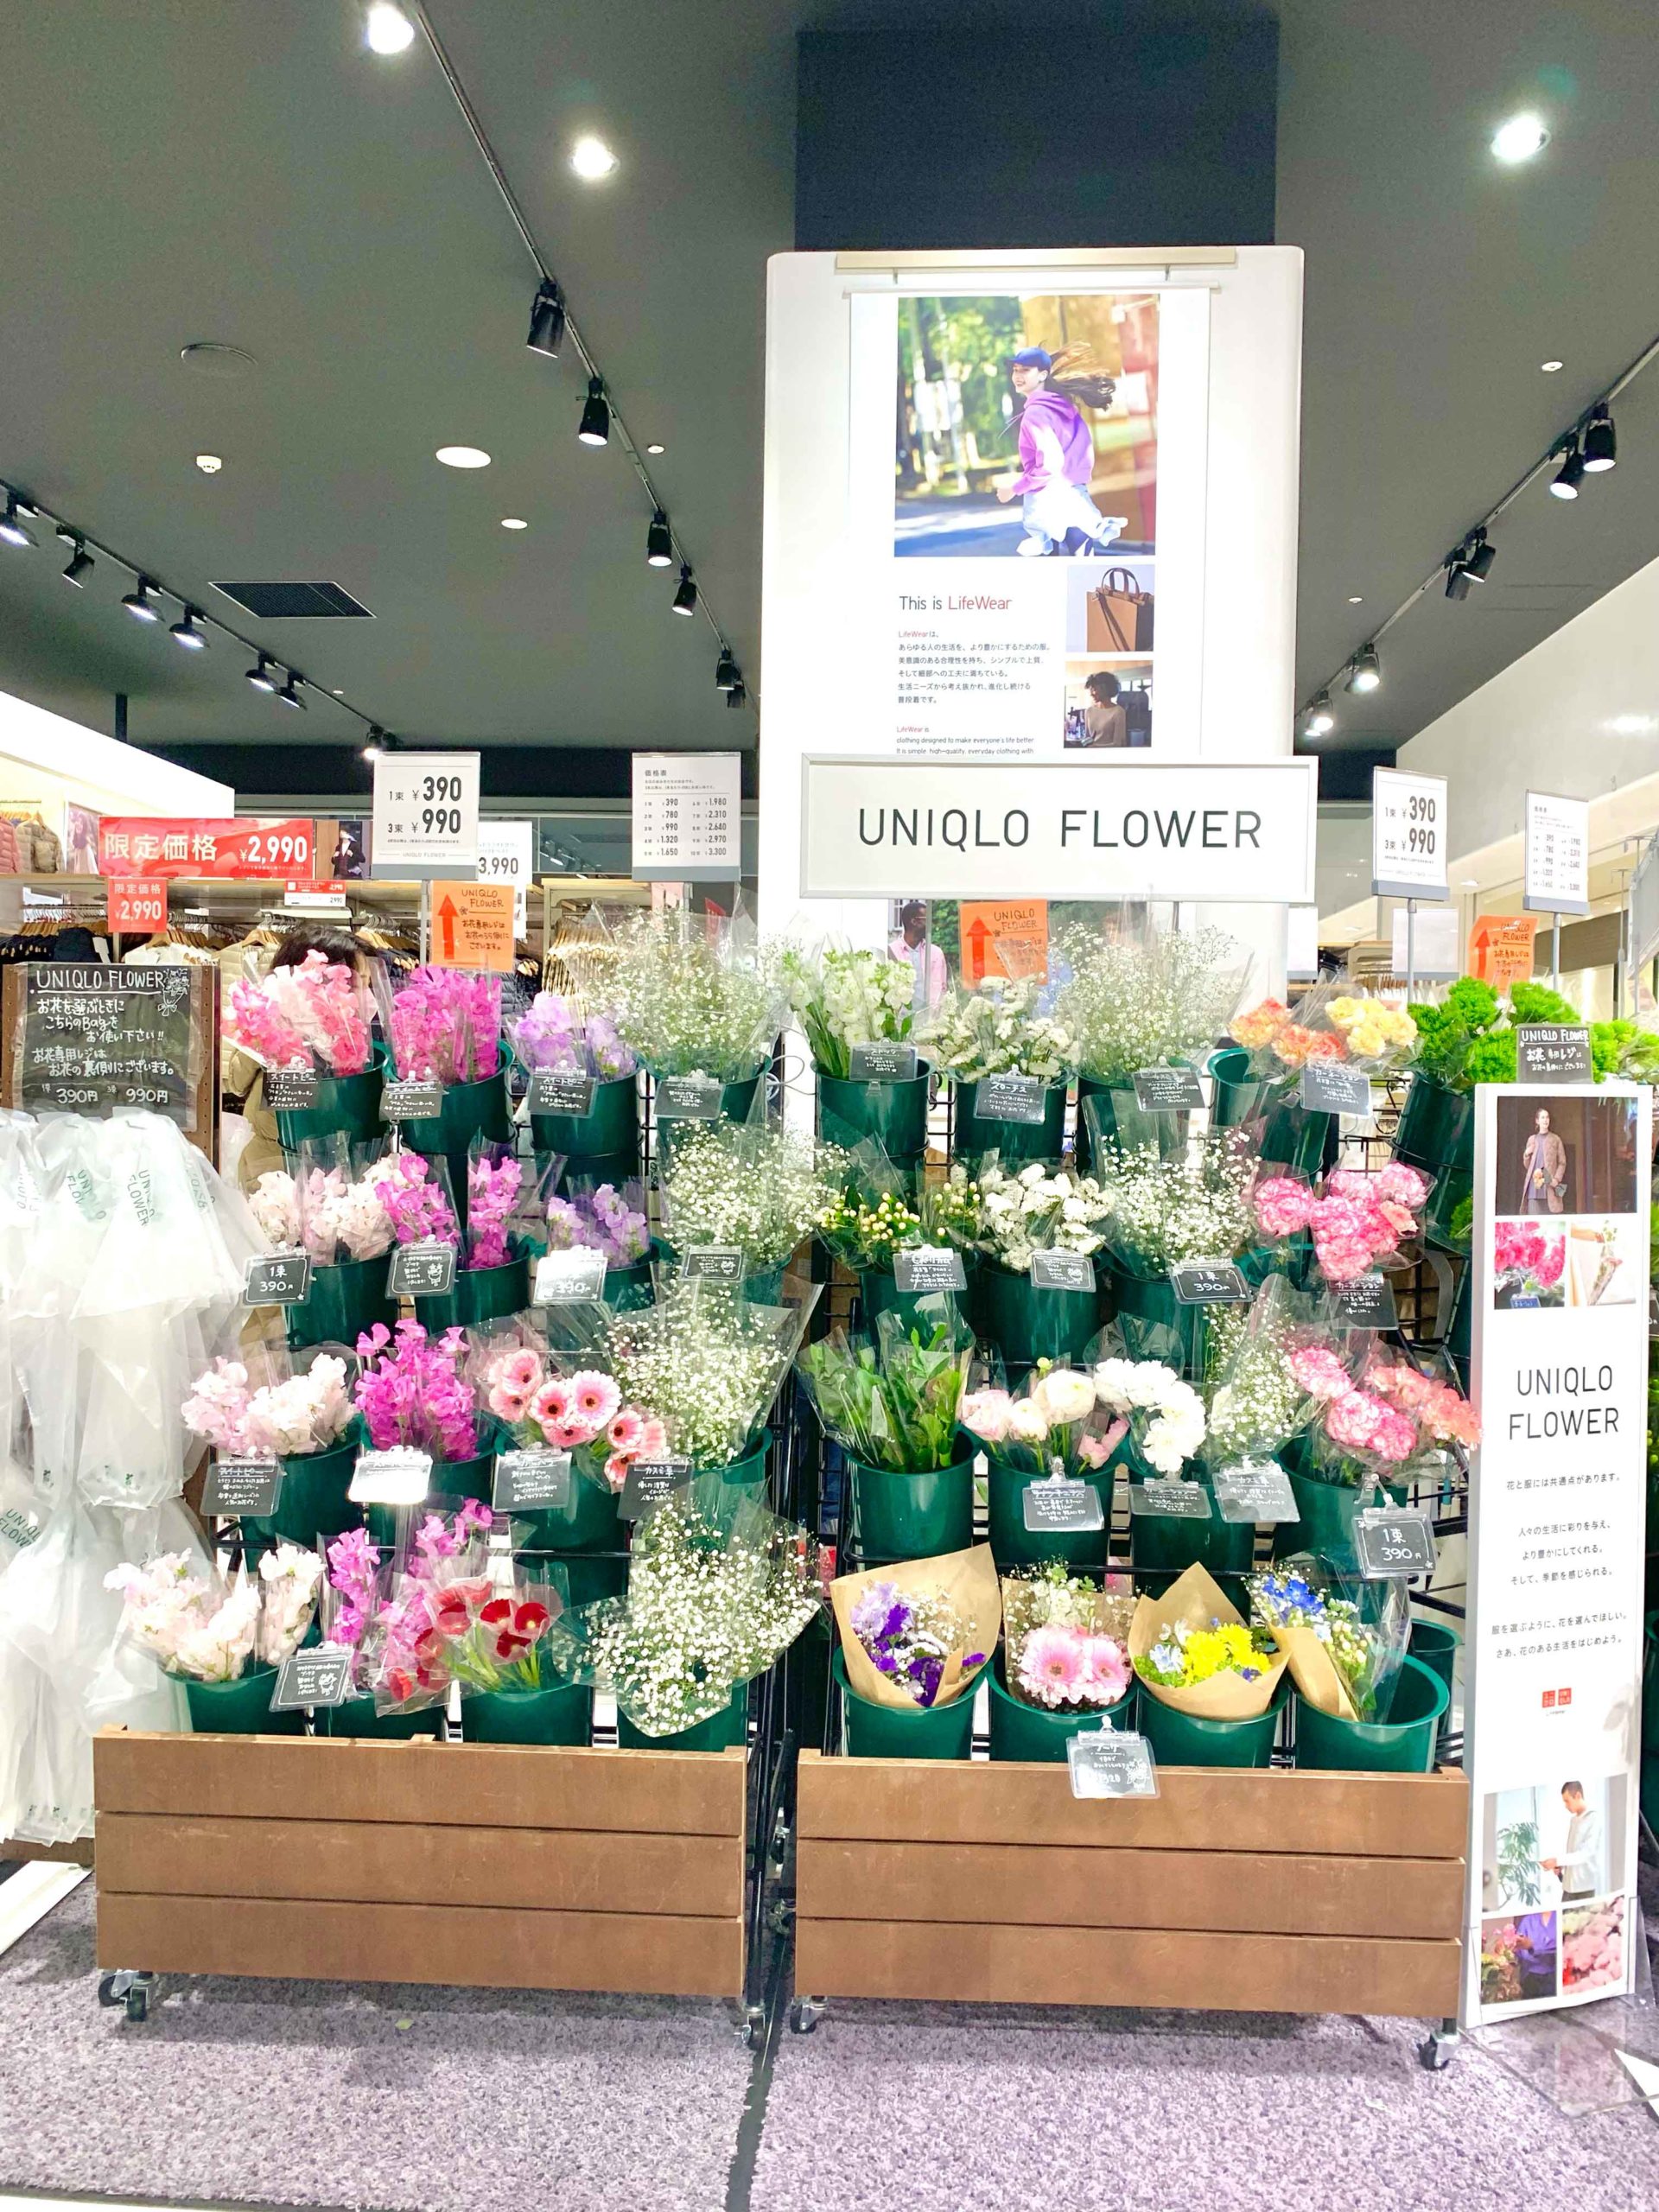 Uniqlo Flower あべのキューズモール店内 Tsunaguru